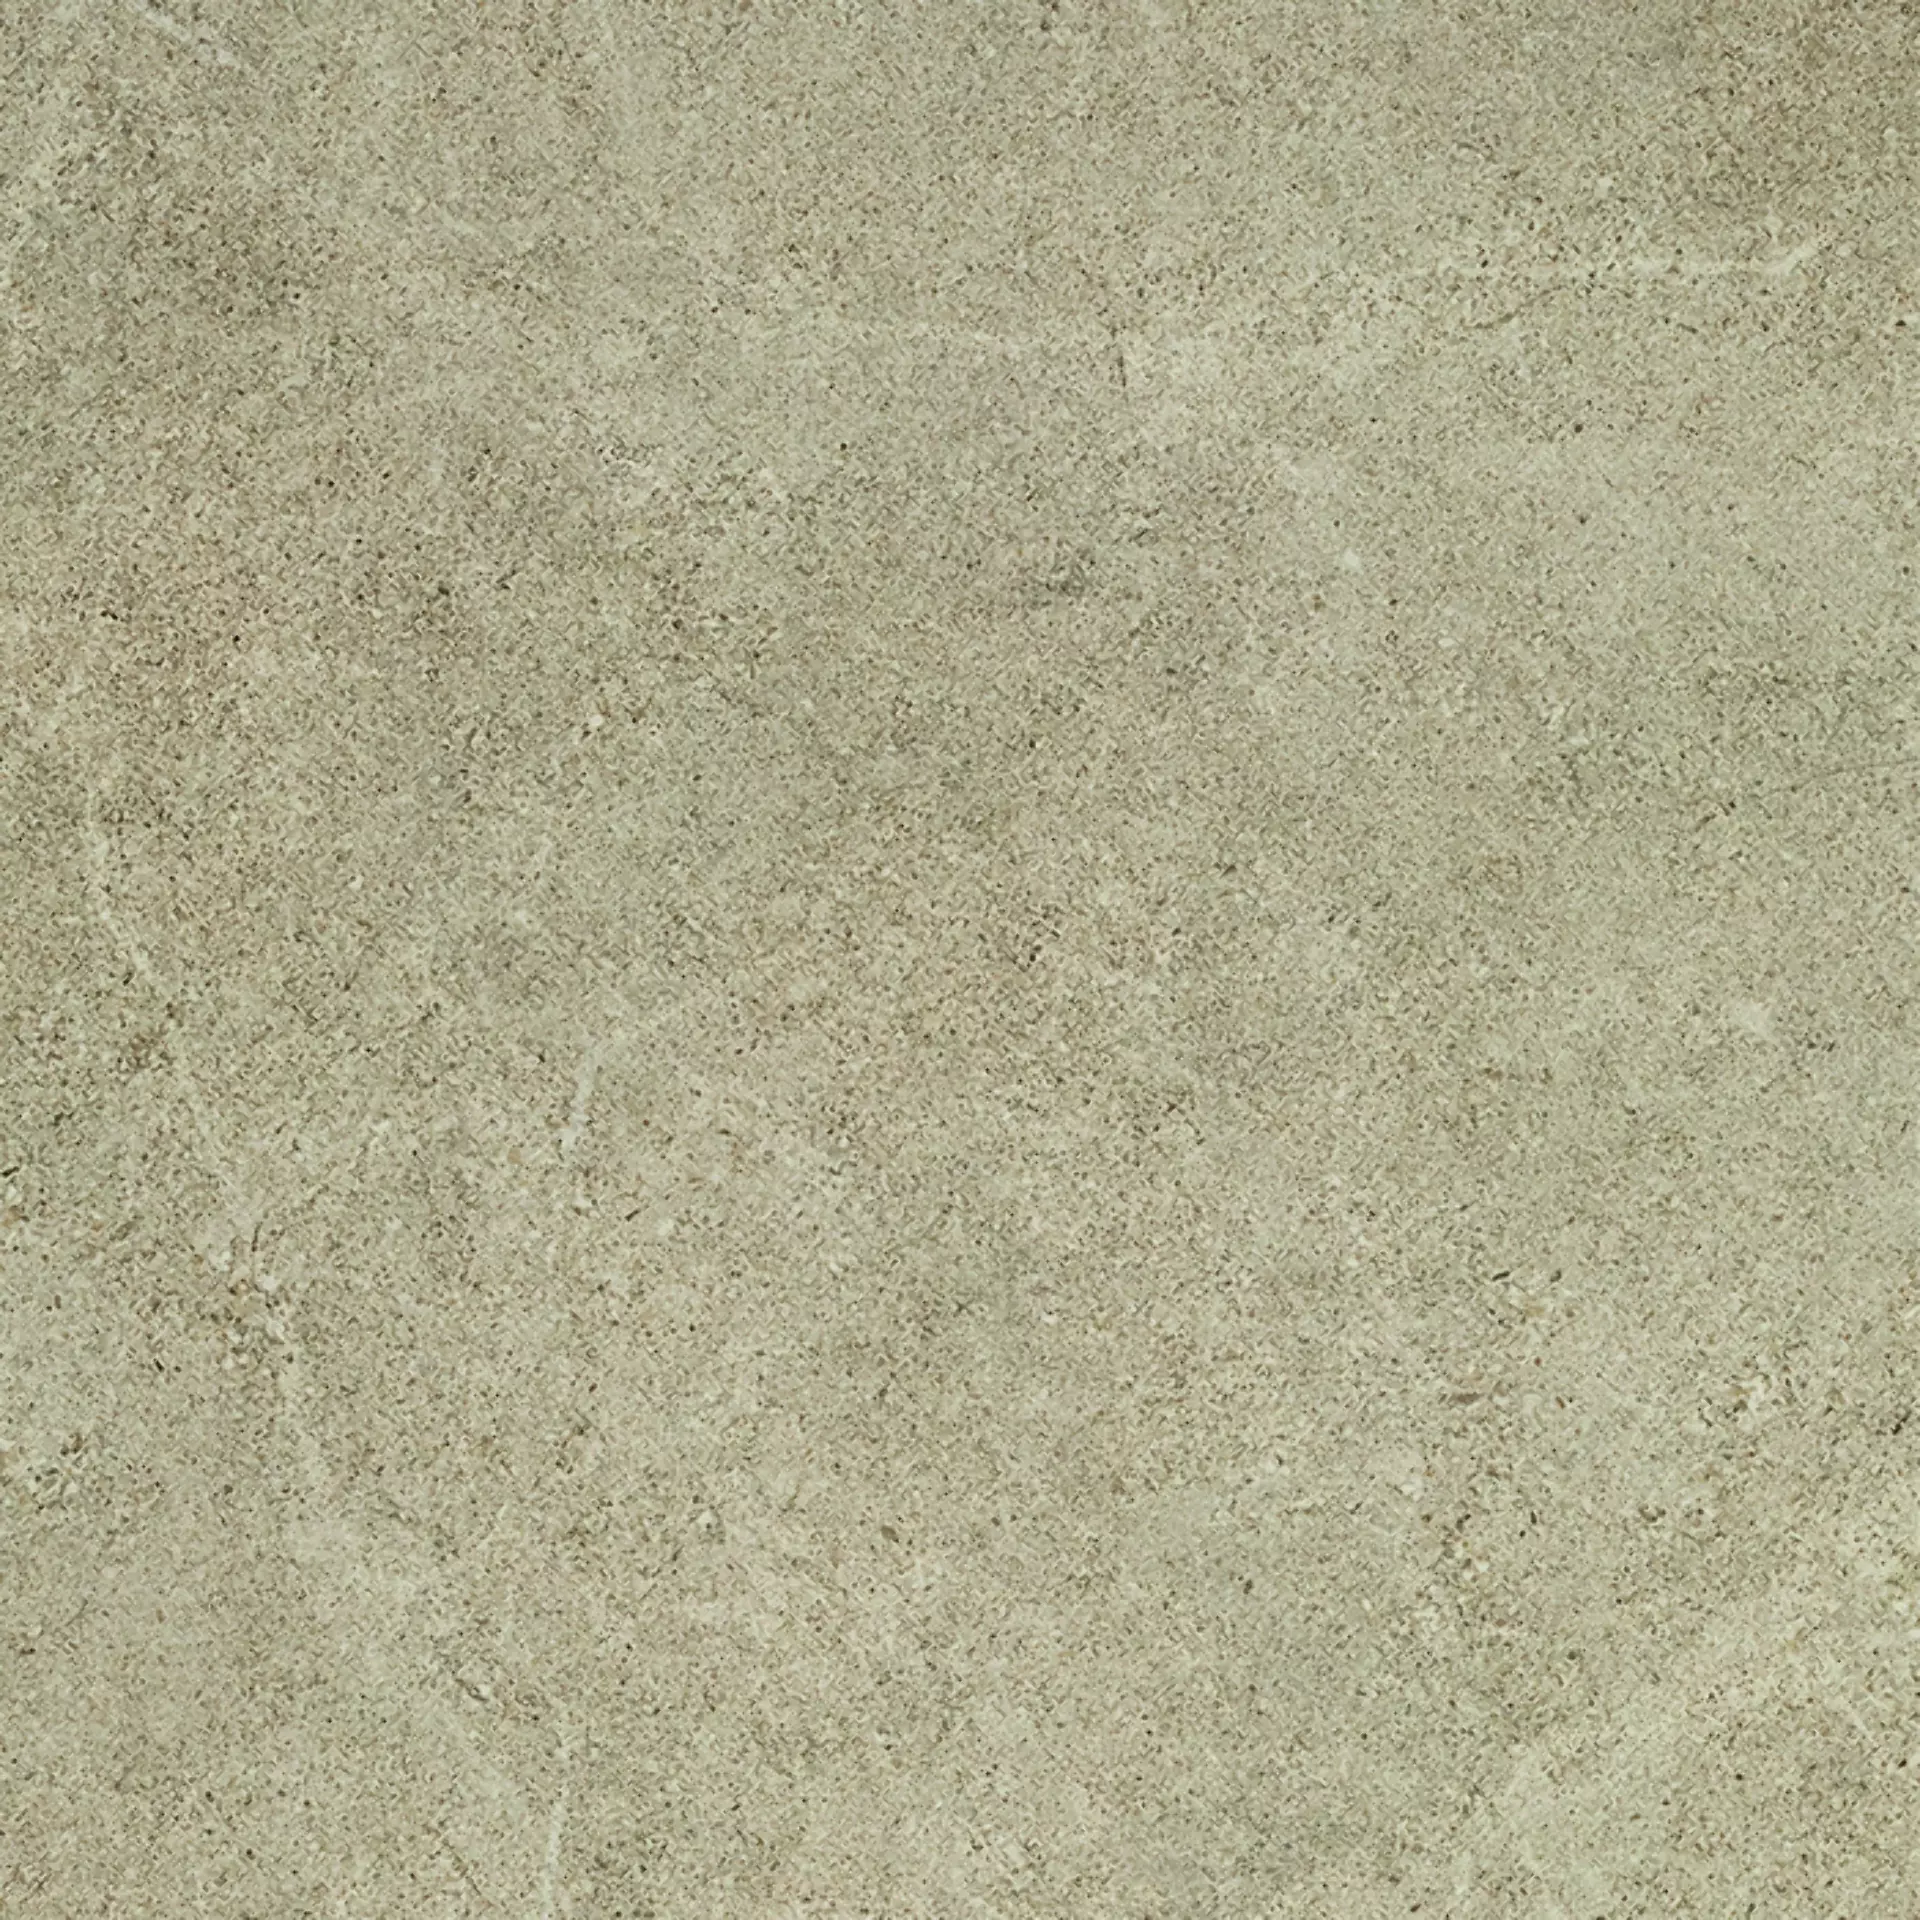 Bodenfliese,Wandfliese Cercom Archistone Sand Naturale Sand 1081736 natur 60x60cm rektifiziert 9,5mm